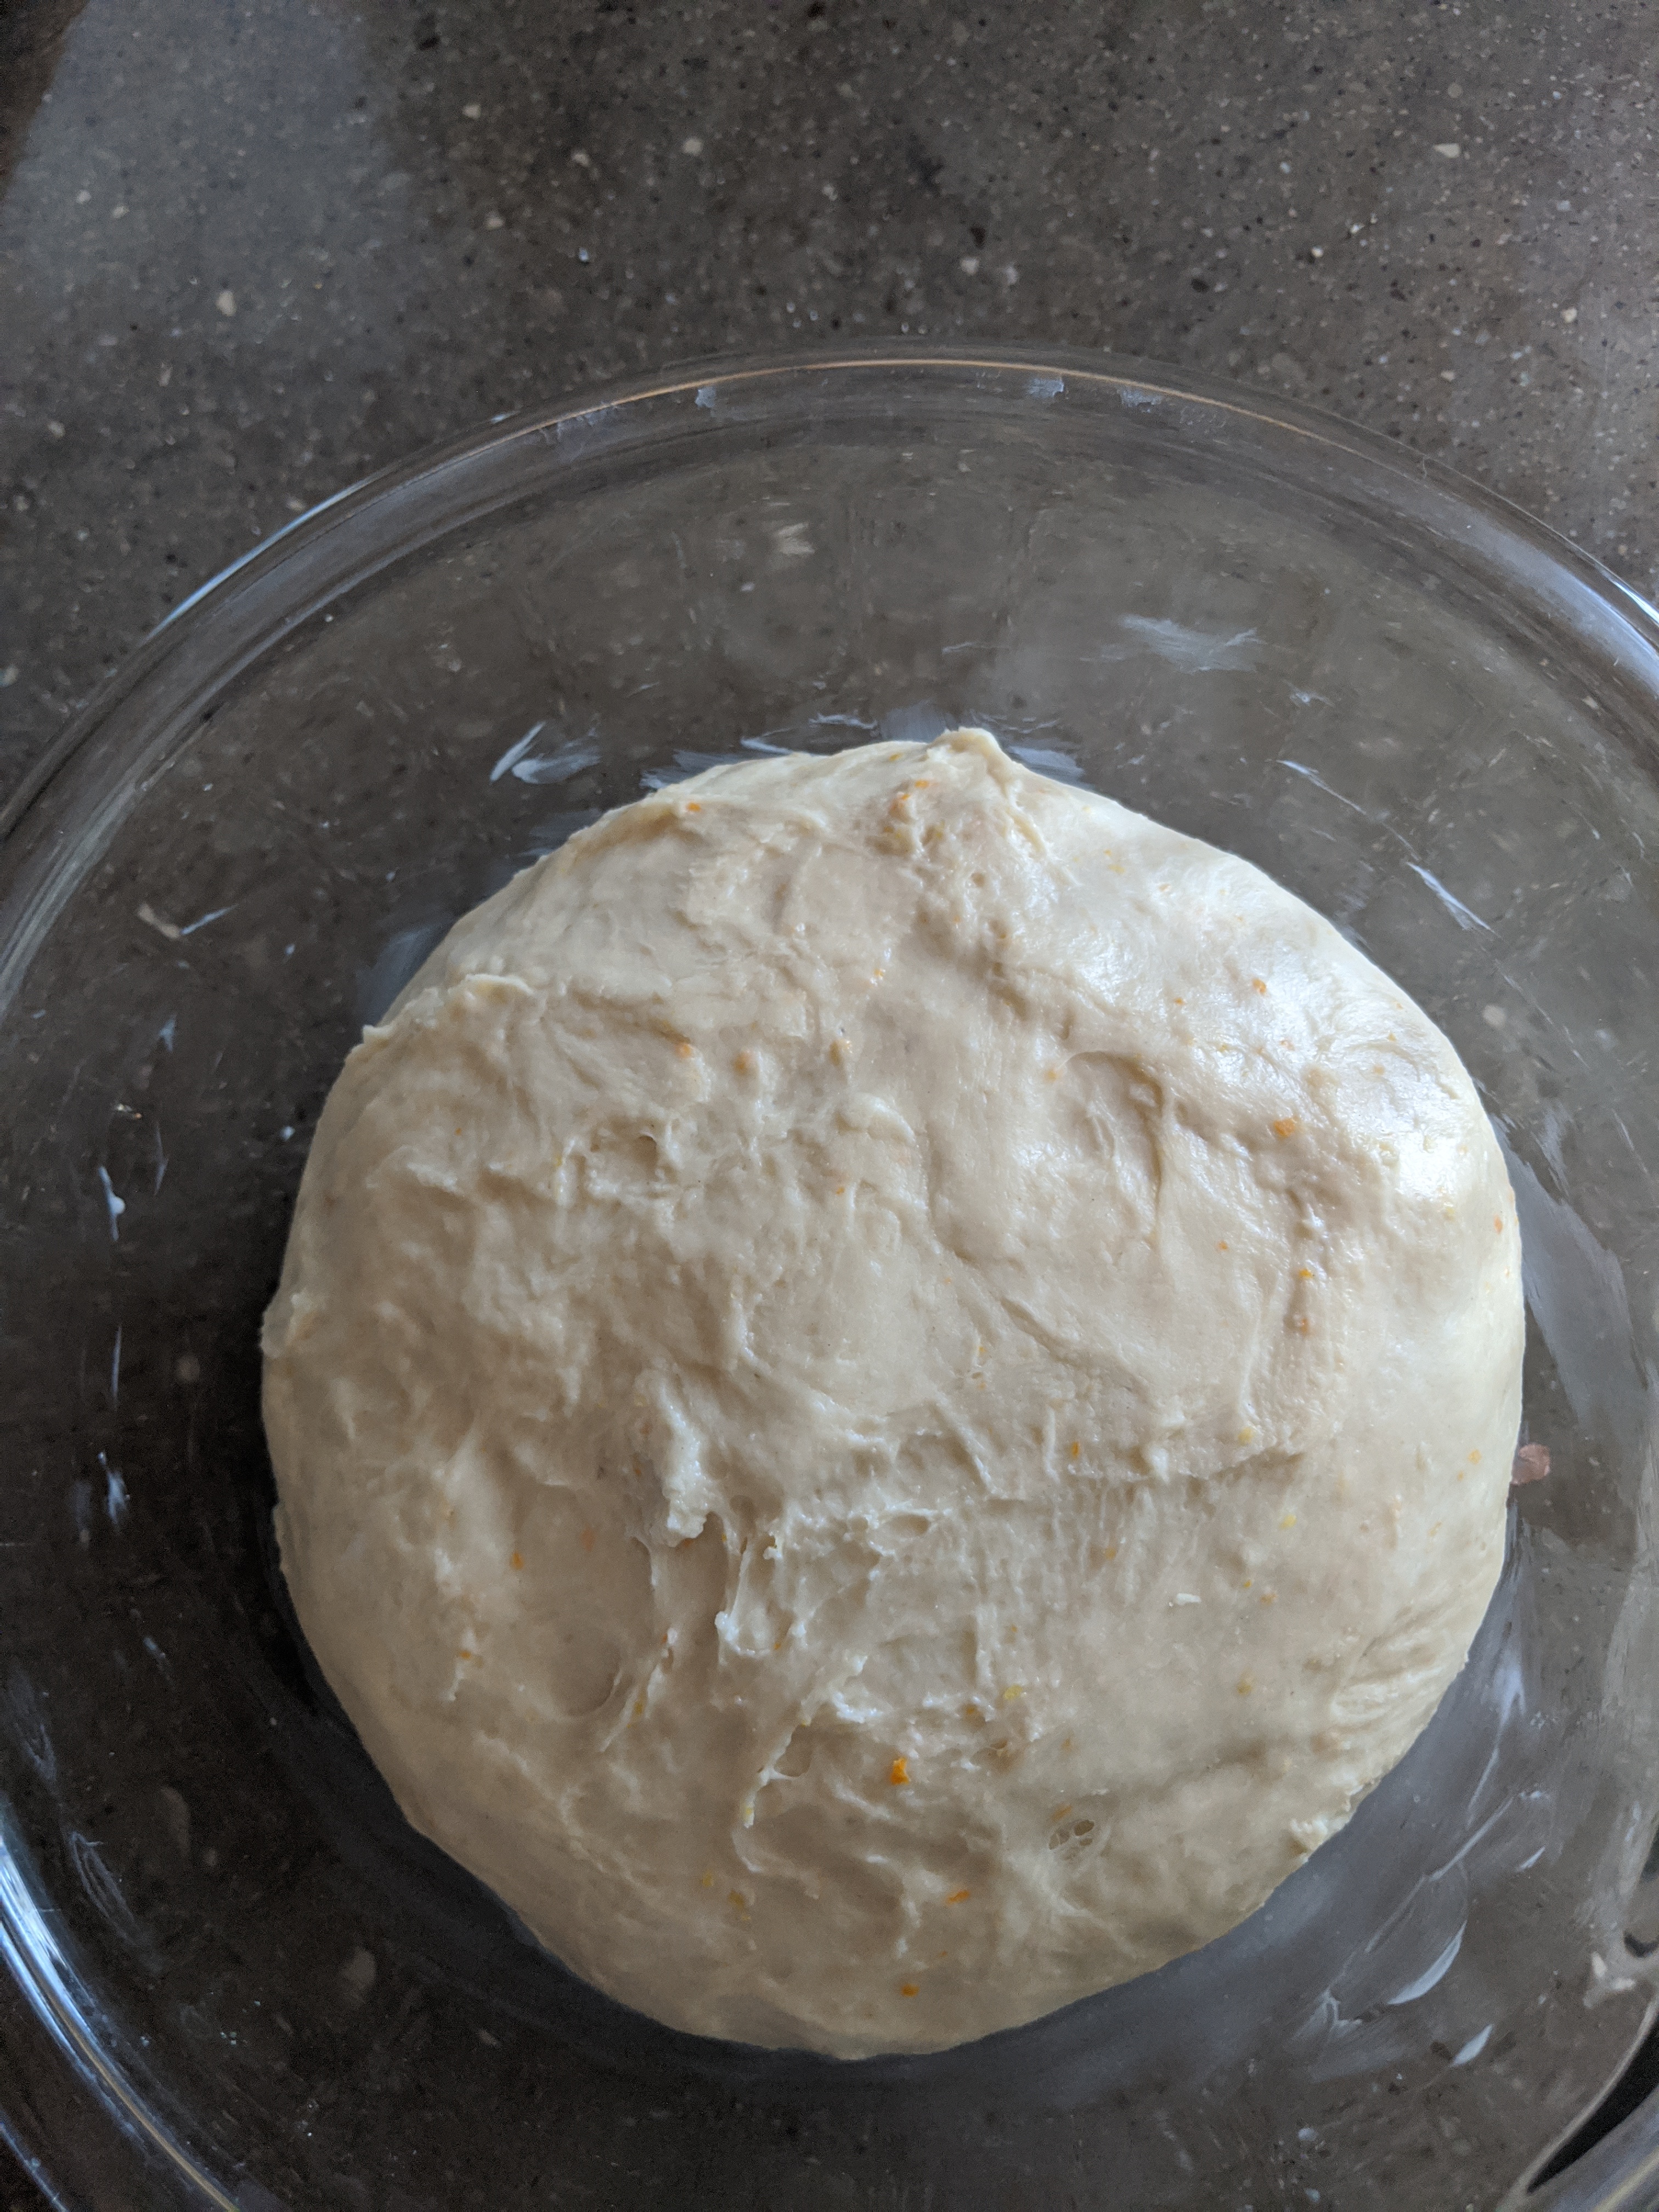 A large bowl of uncooked, unrisen dough